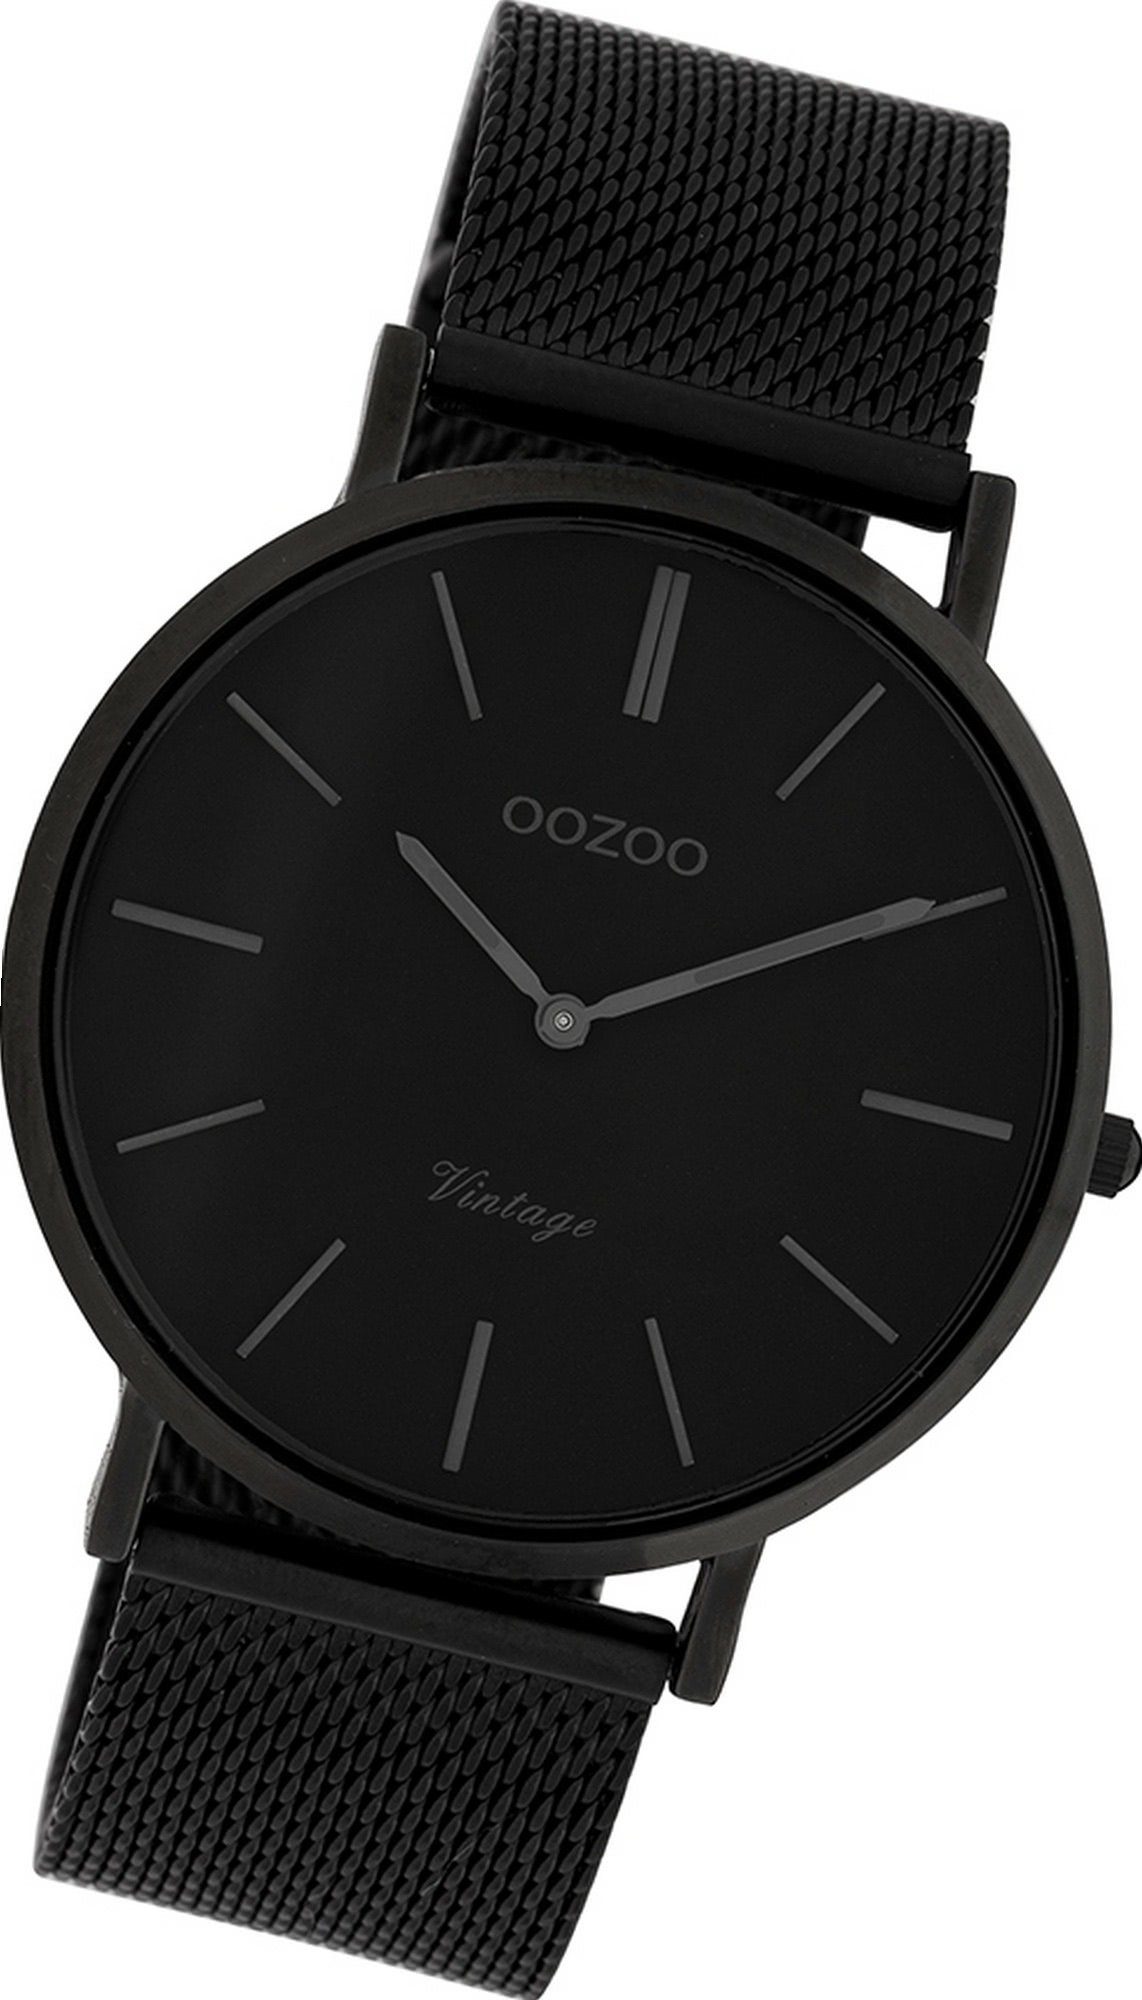 OOZOO Quarzuhr Oozoo Edelstahl Herren Uhr C9933 Analog, Herrenuhr Edelstahlarmband schwarz, rundes Gehäuse, groß (ca. 40mm)